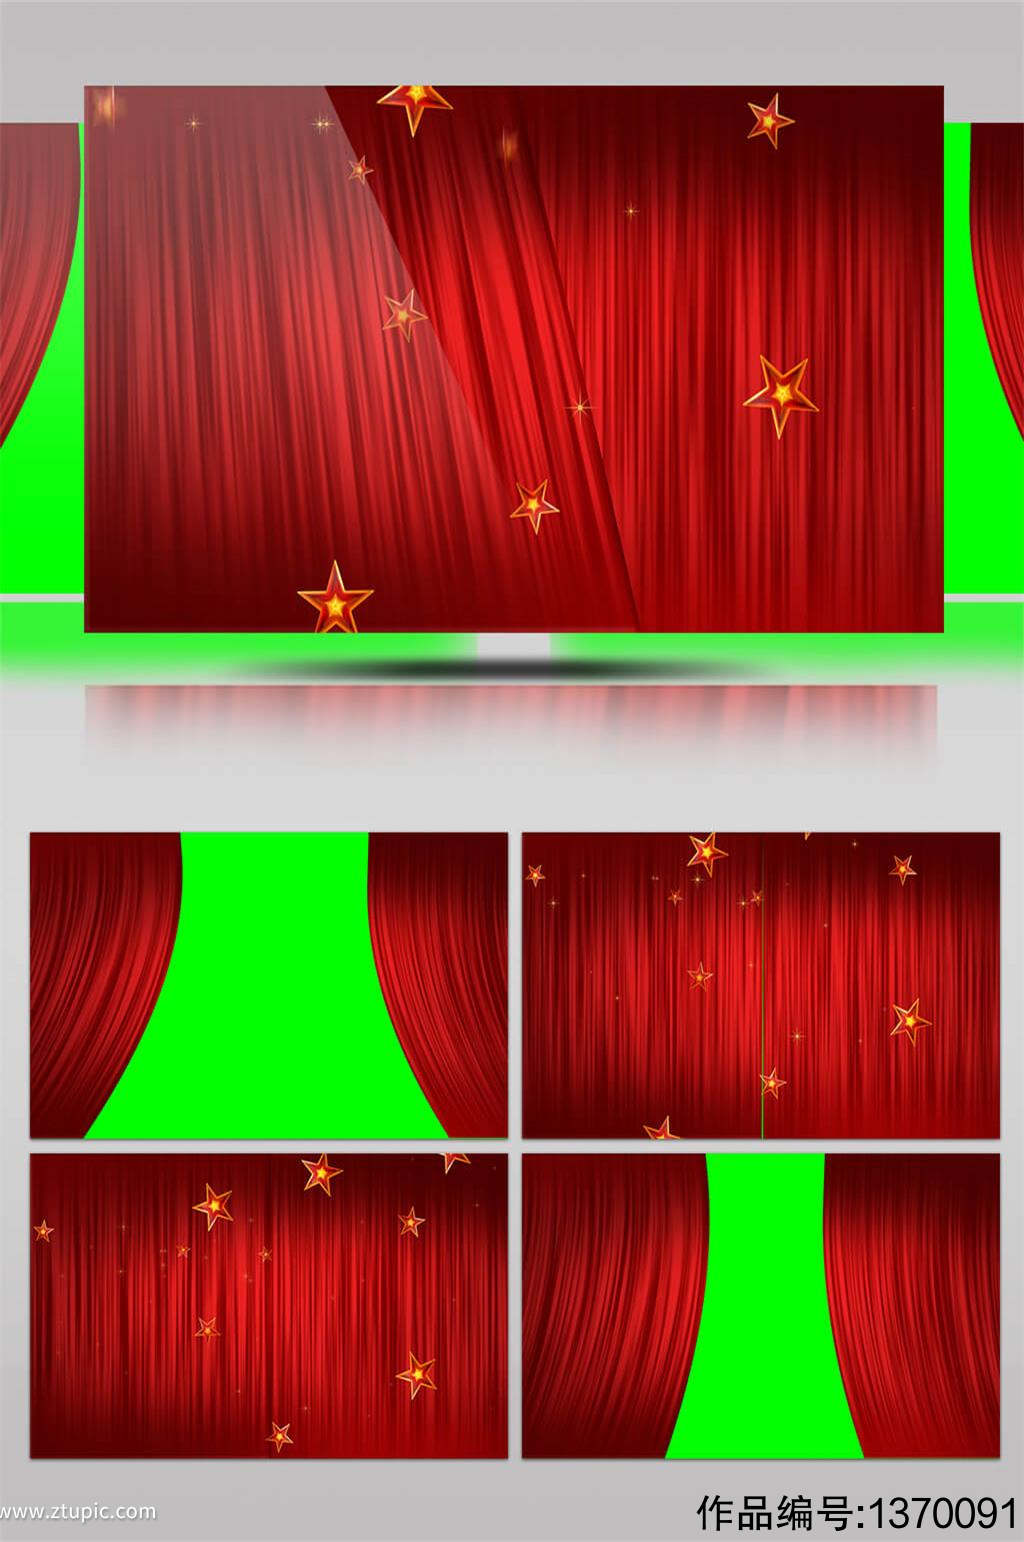 红色华丽舞台幕布快速拉开合拢绿屏视频素材